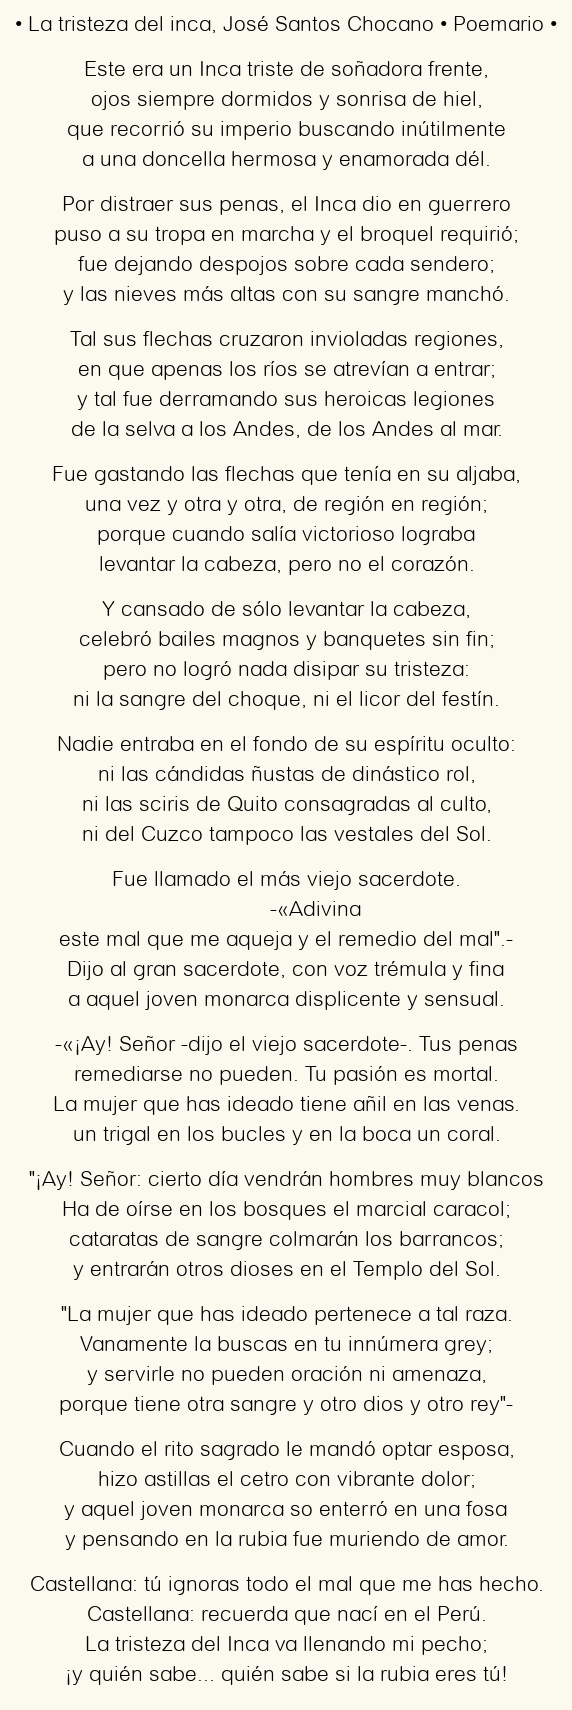 Imagen con el poema La tristeza del inca, por José Santos Chocano